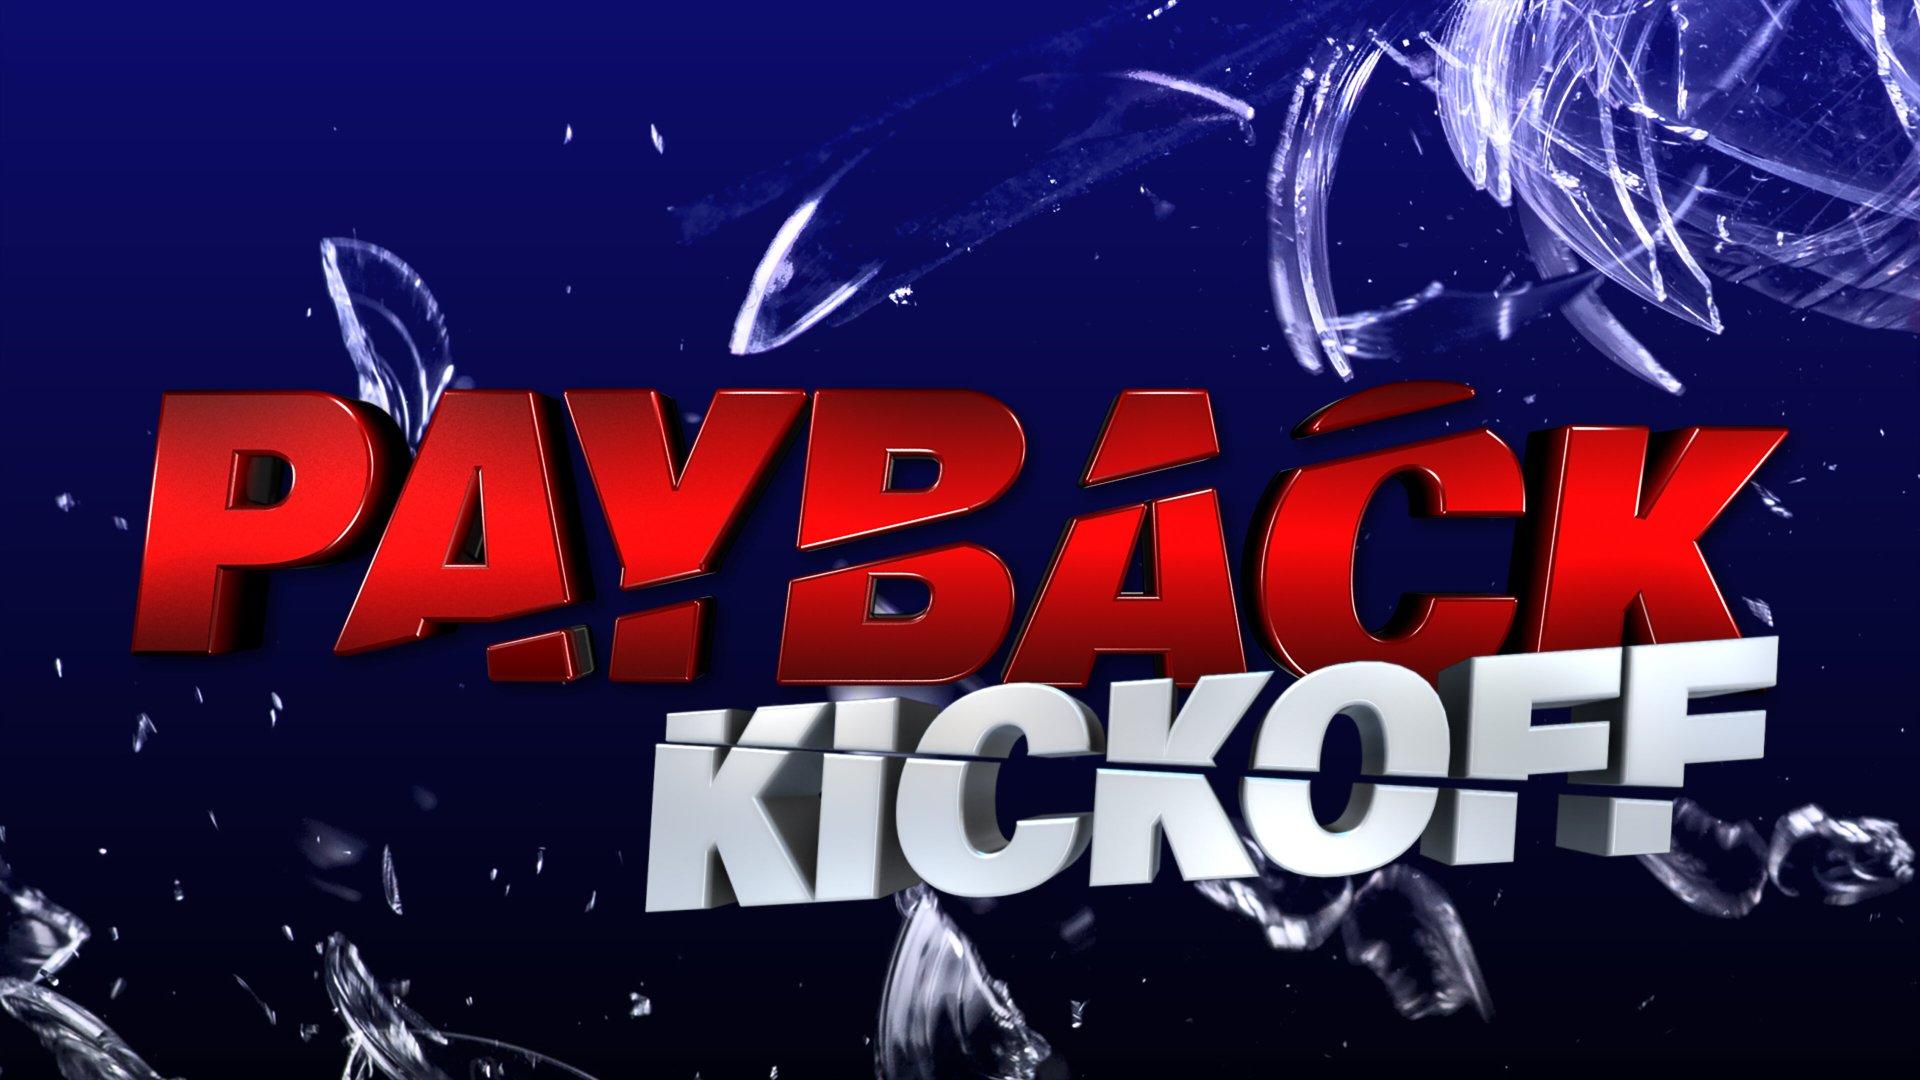 WWE Payback 2015 Kickoff